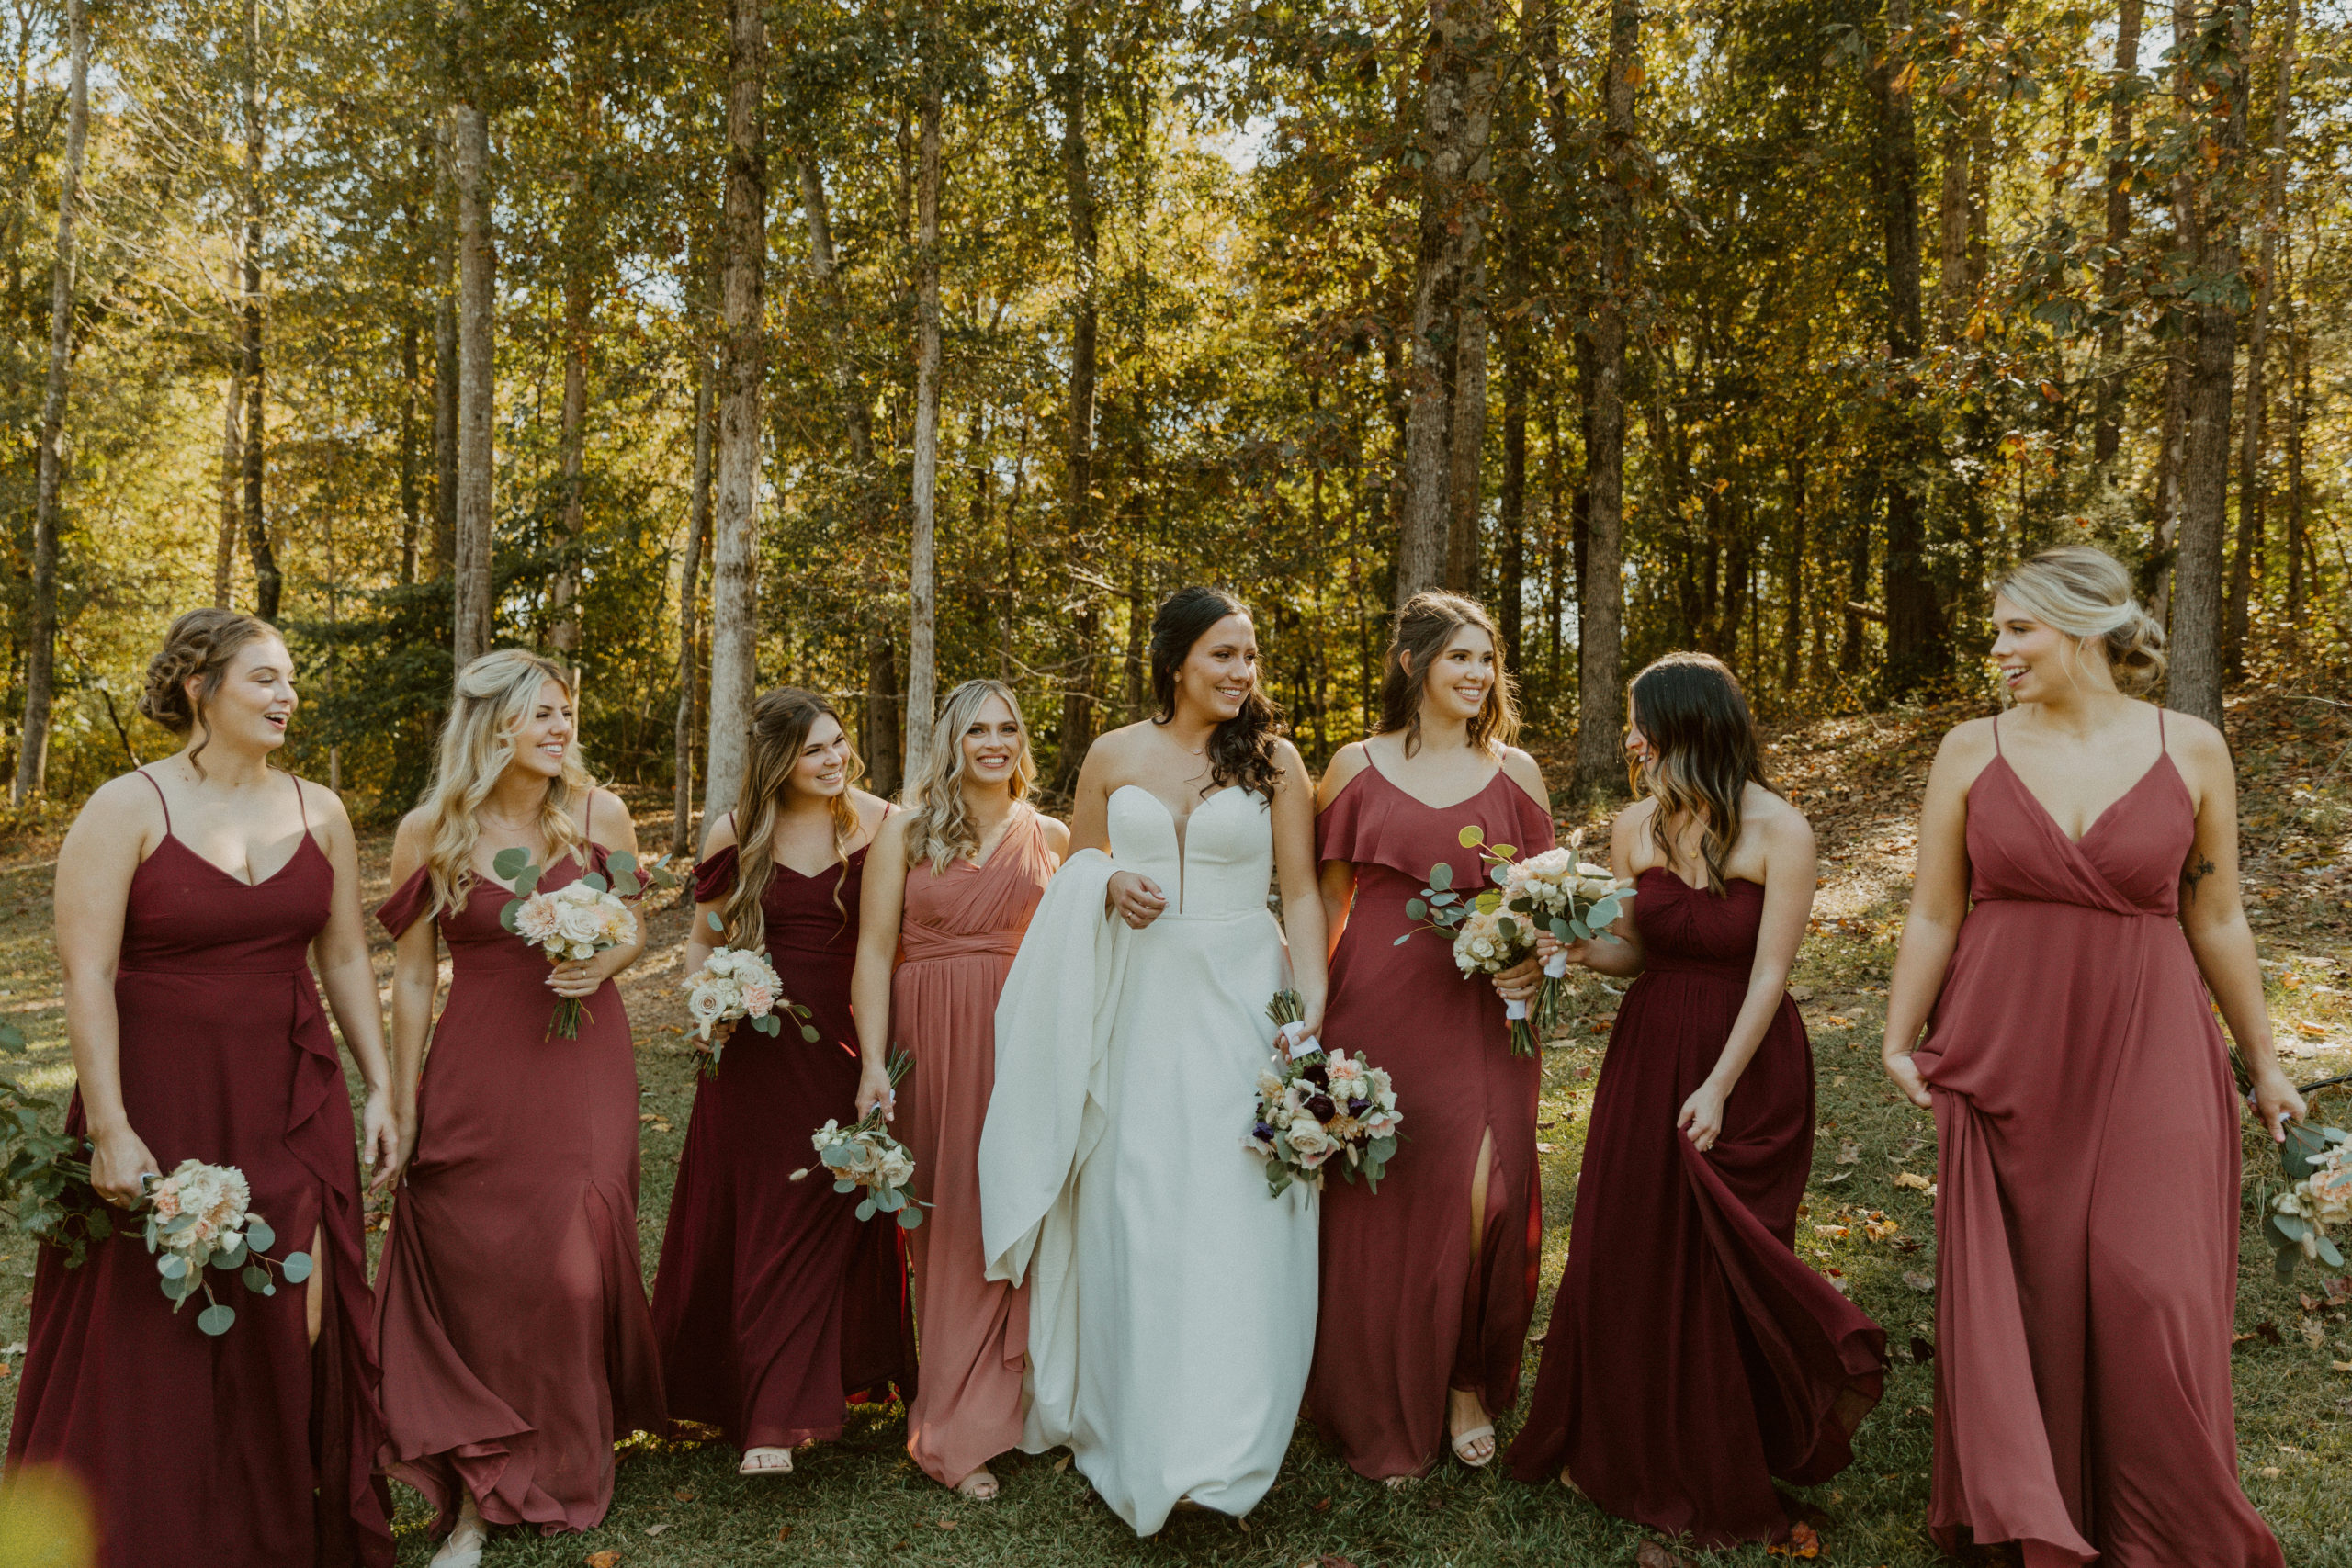 Brides with bridesmaids at rustic fall wedding